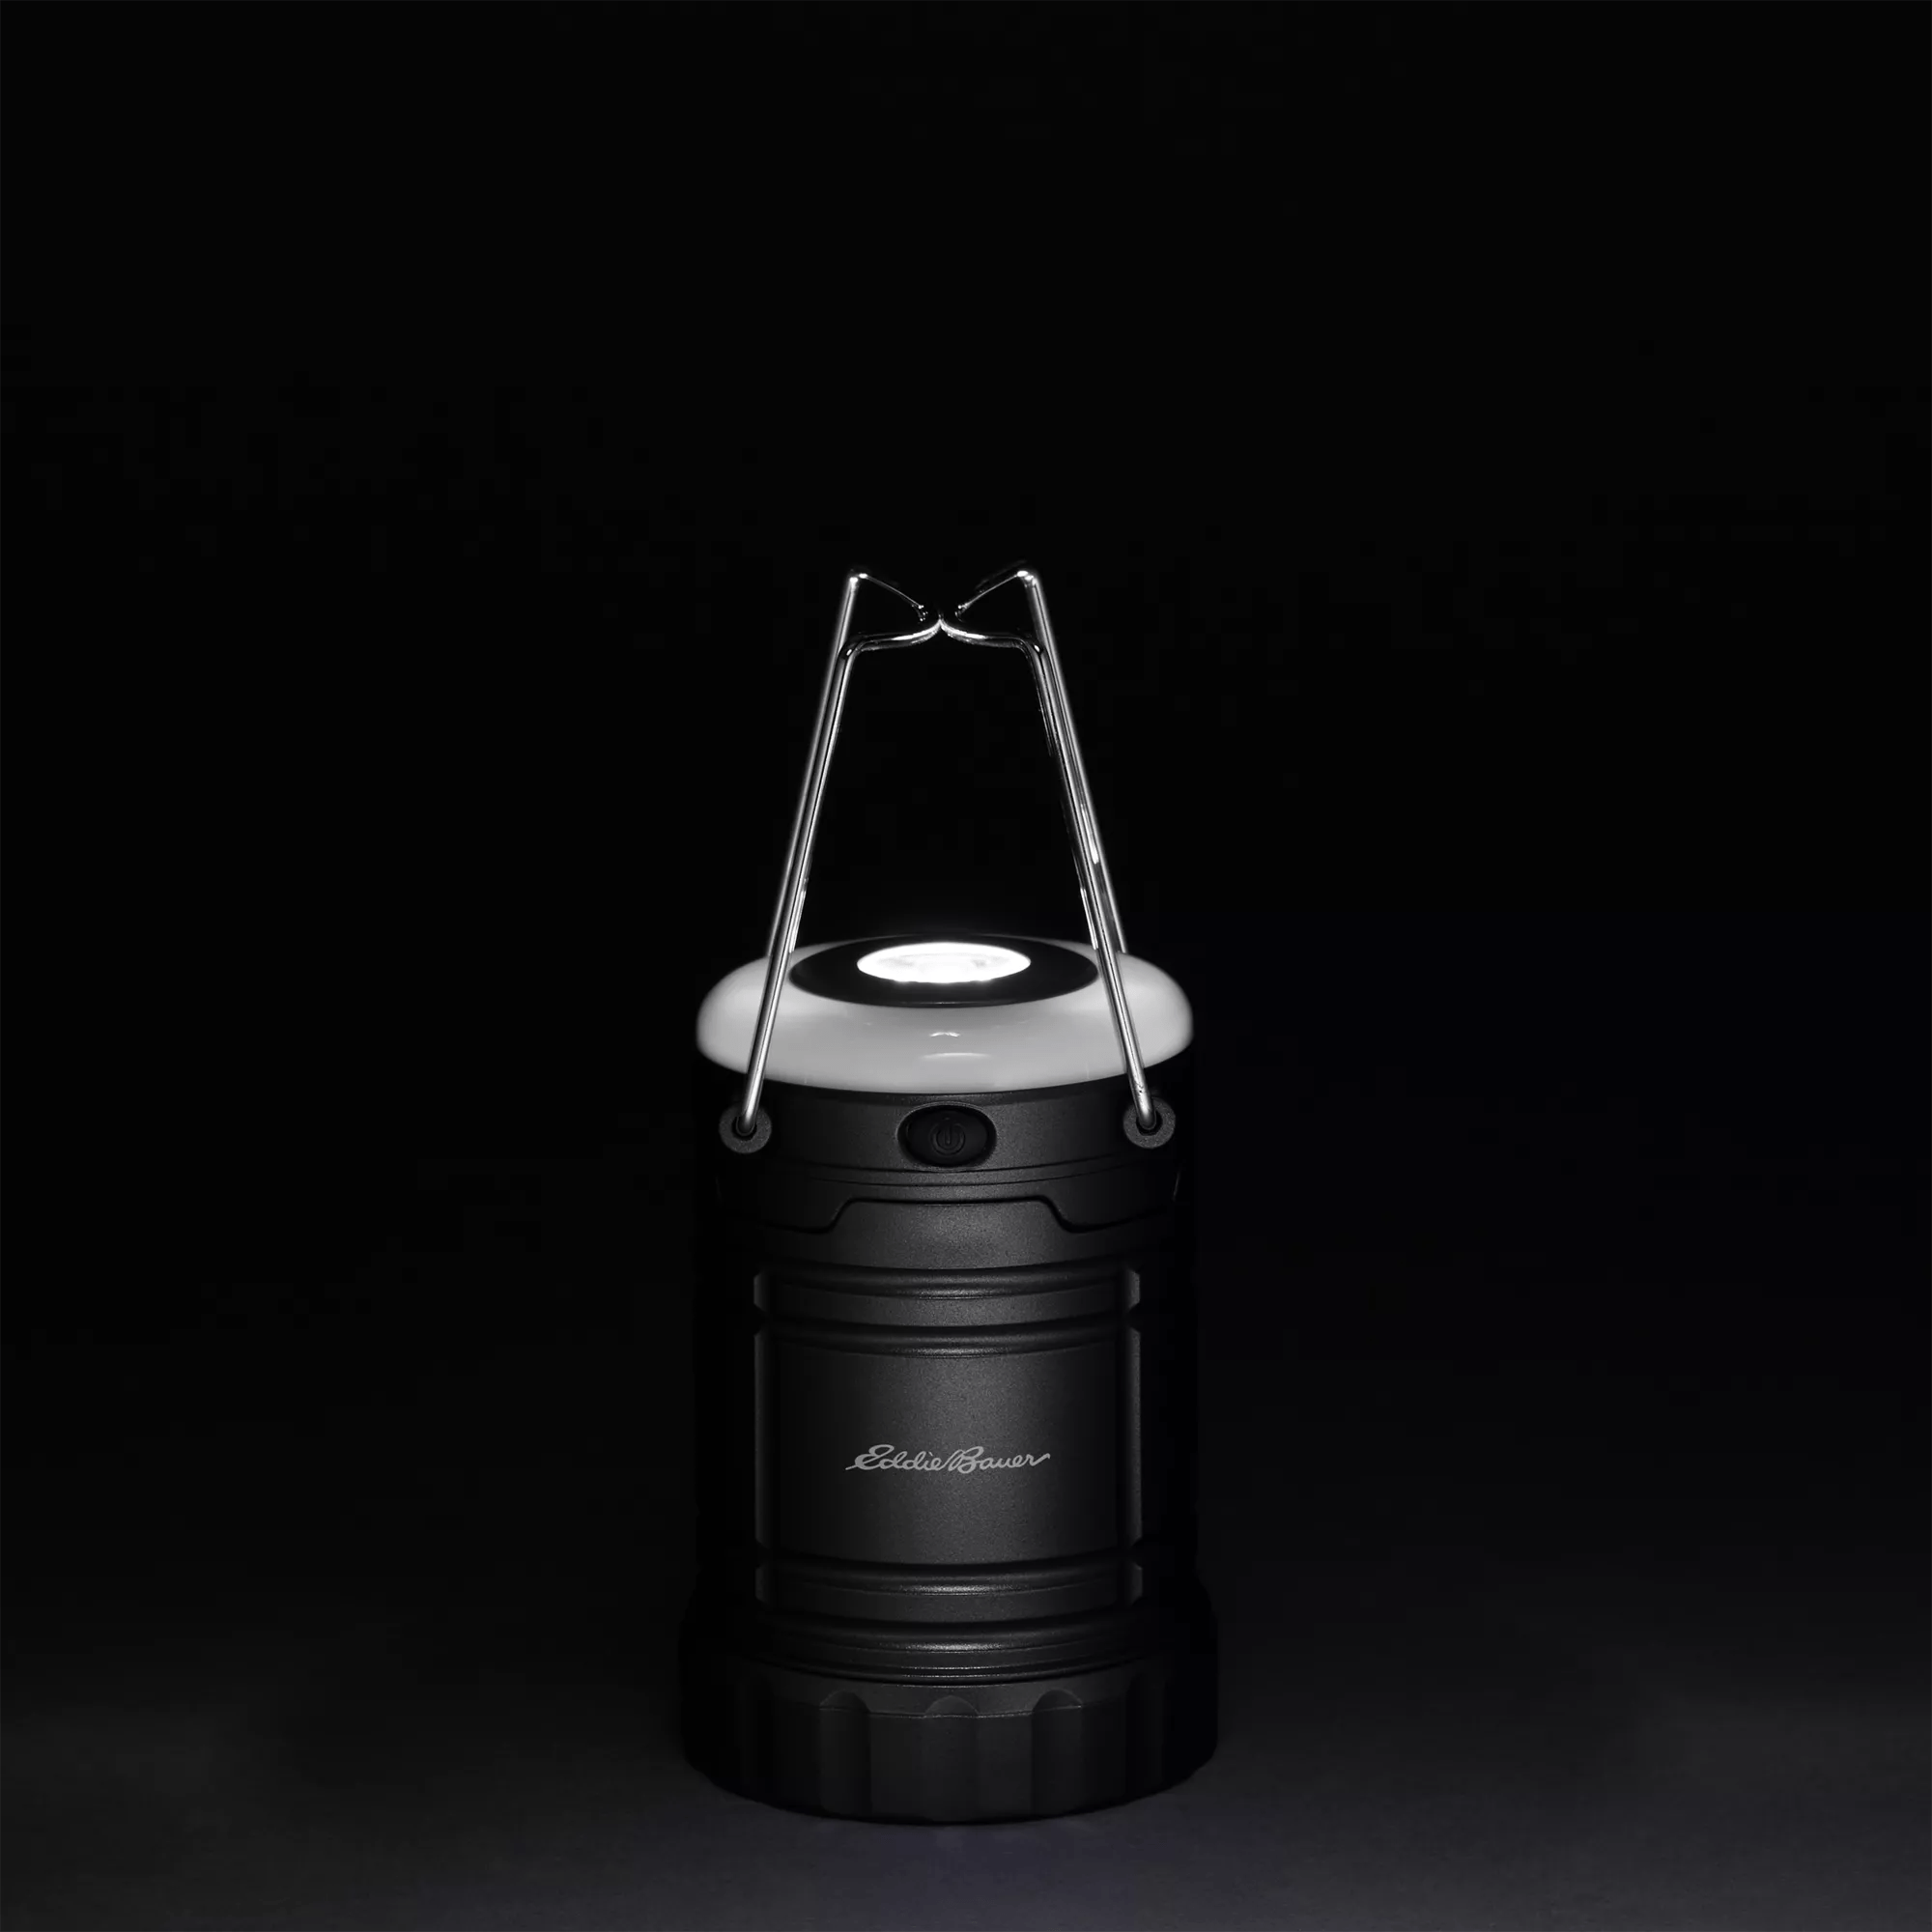 250 Lumen Pop-Up Lantern